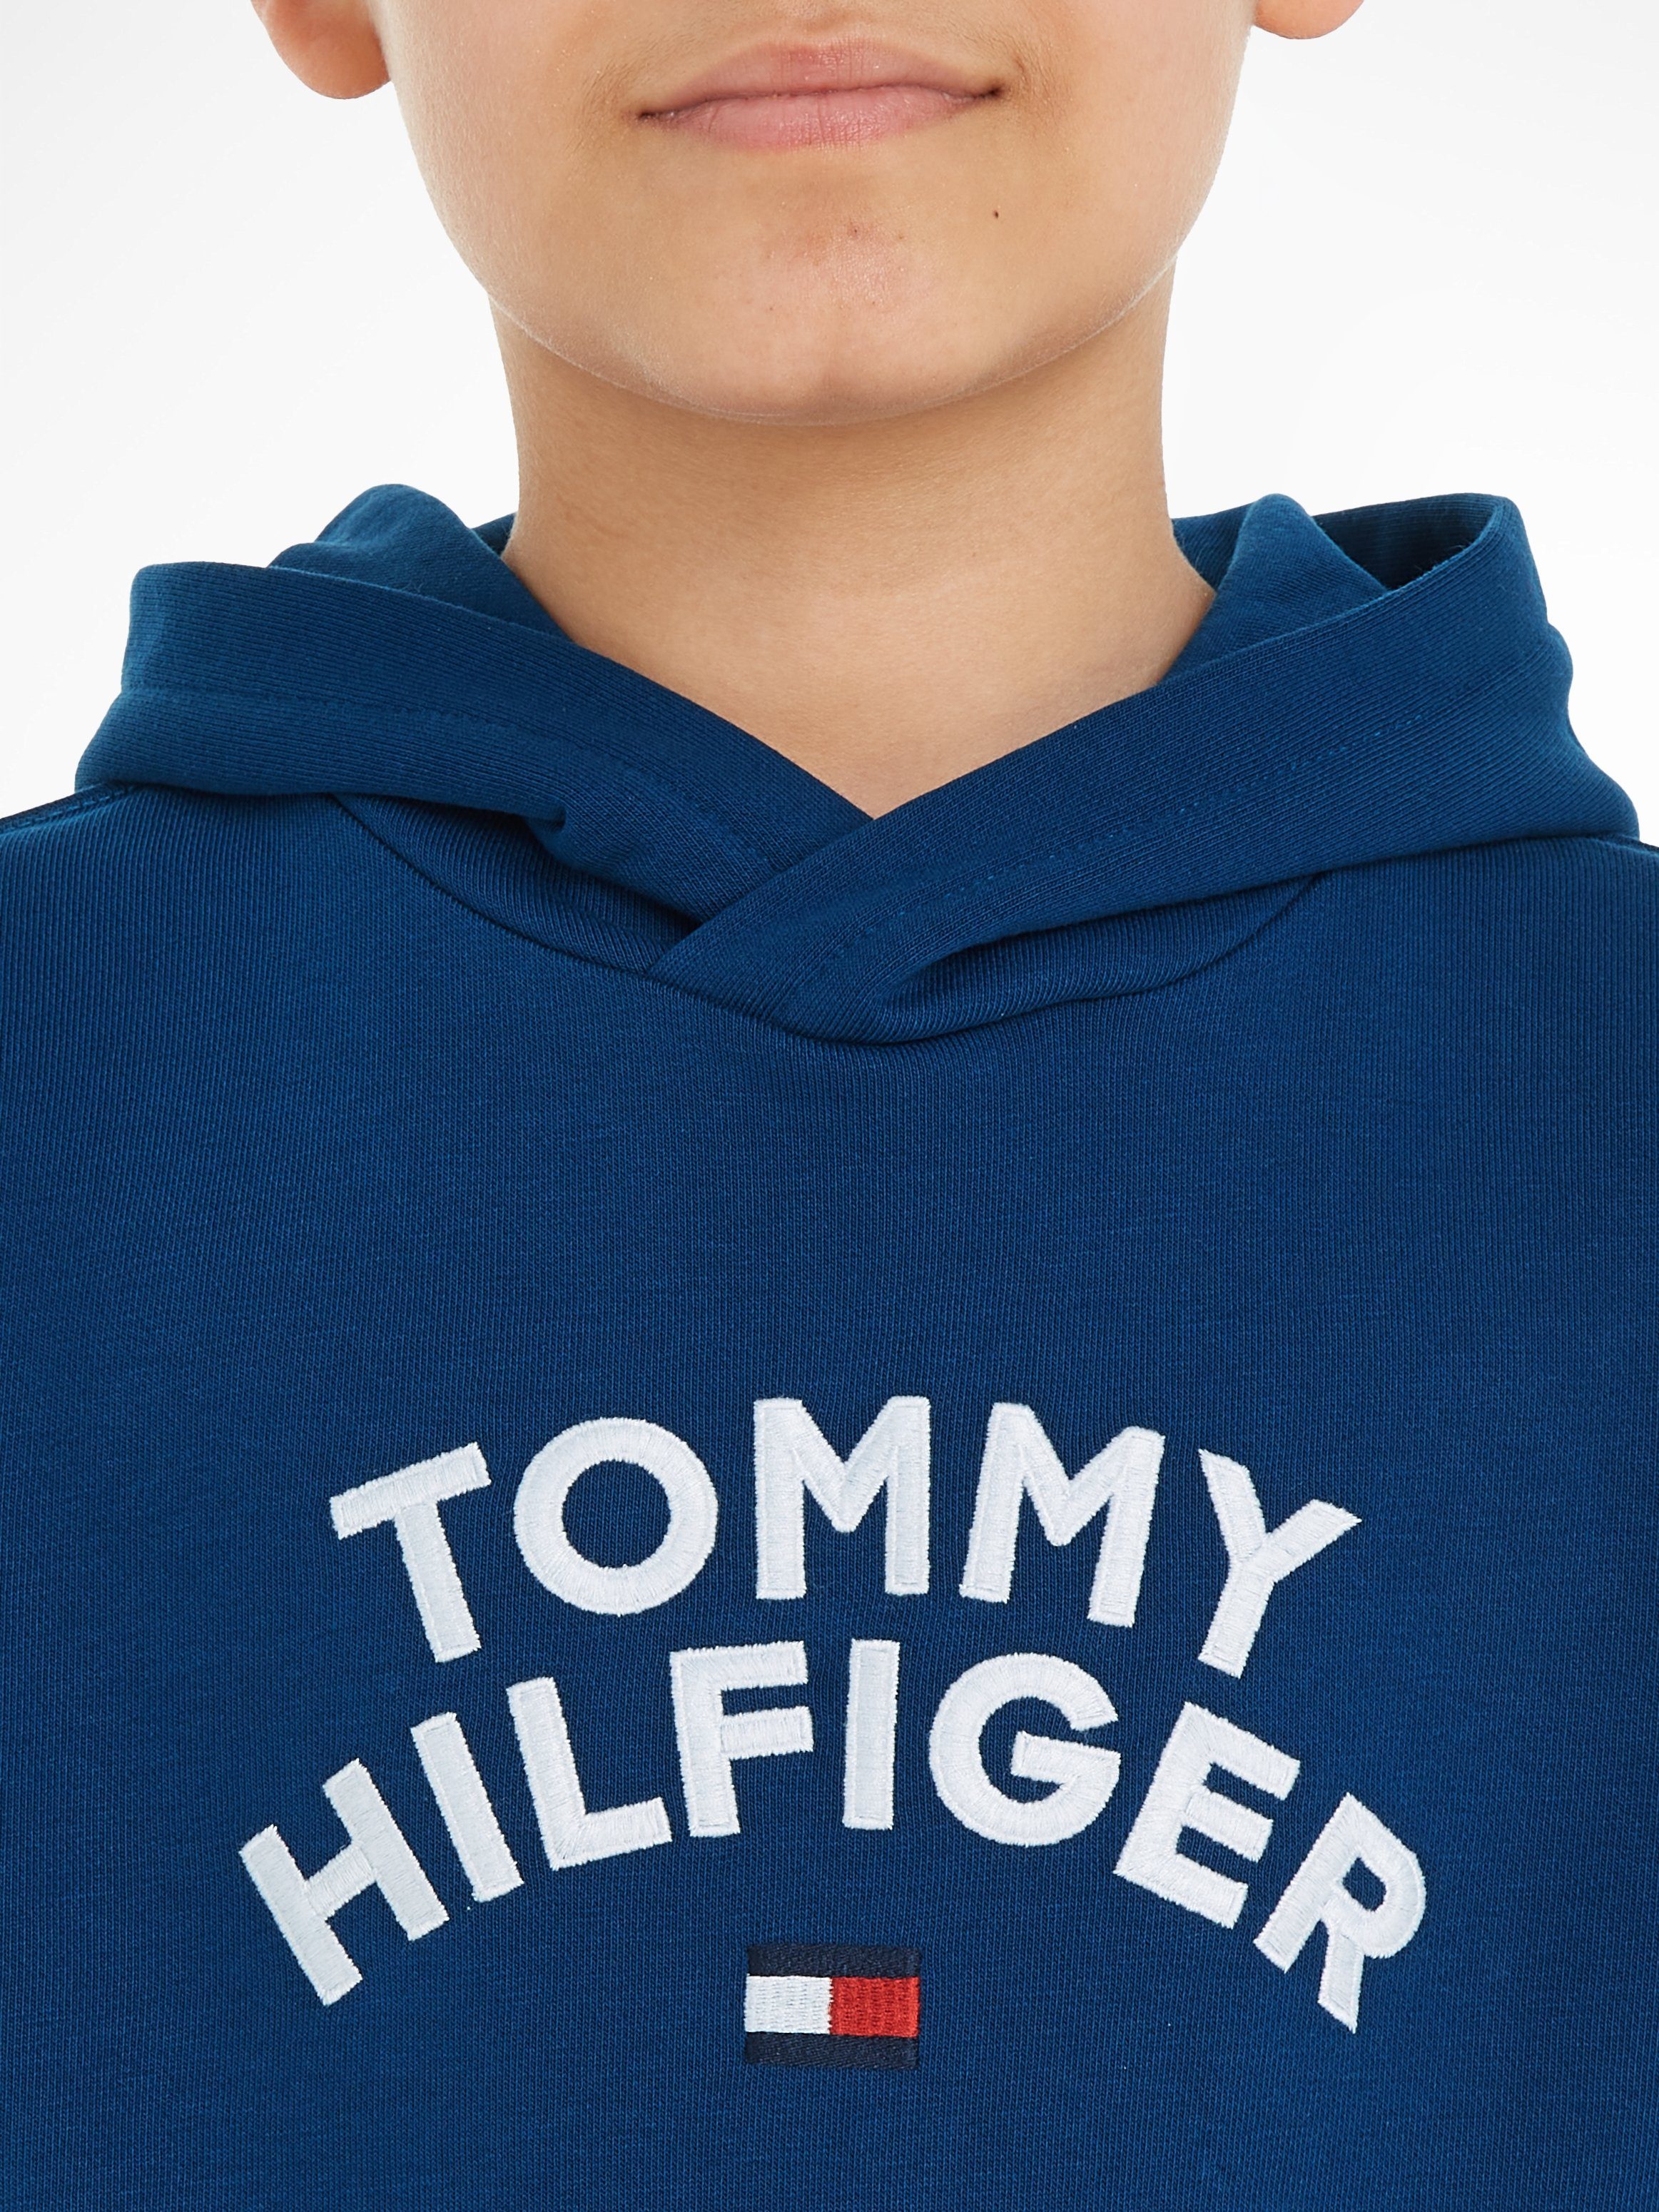 Hilfiger TOMMY FLAG HOODIE Hoodie Tommy HILFIGER